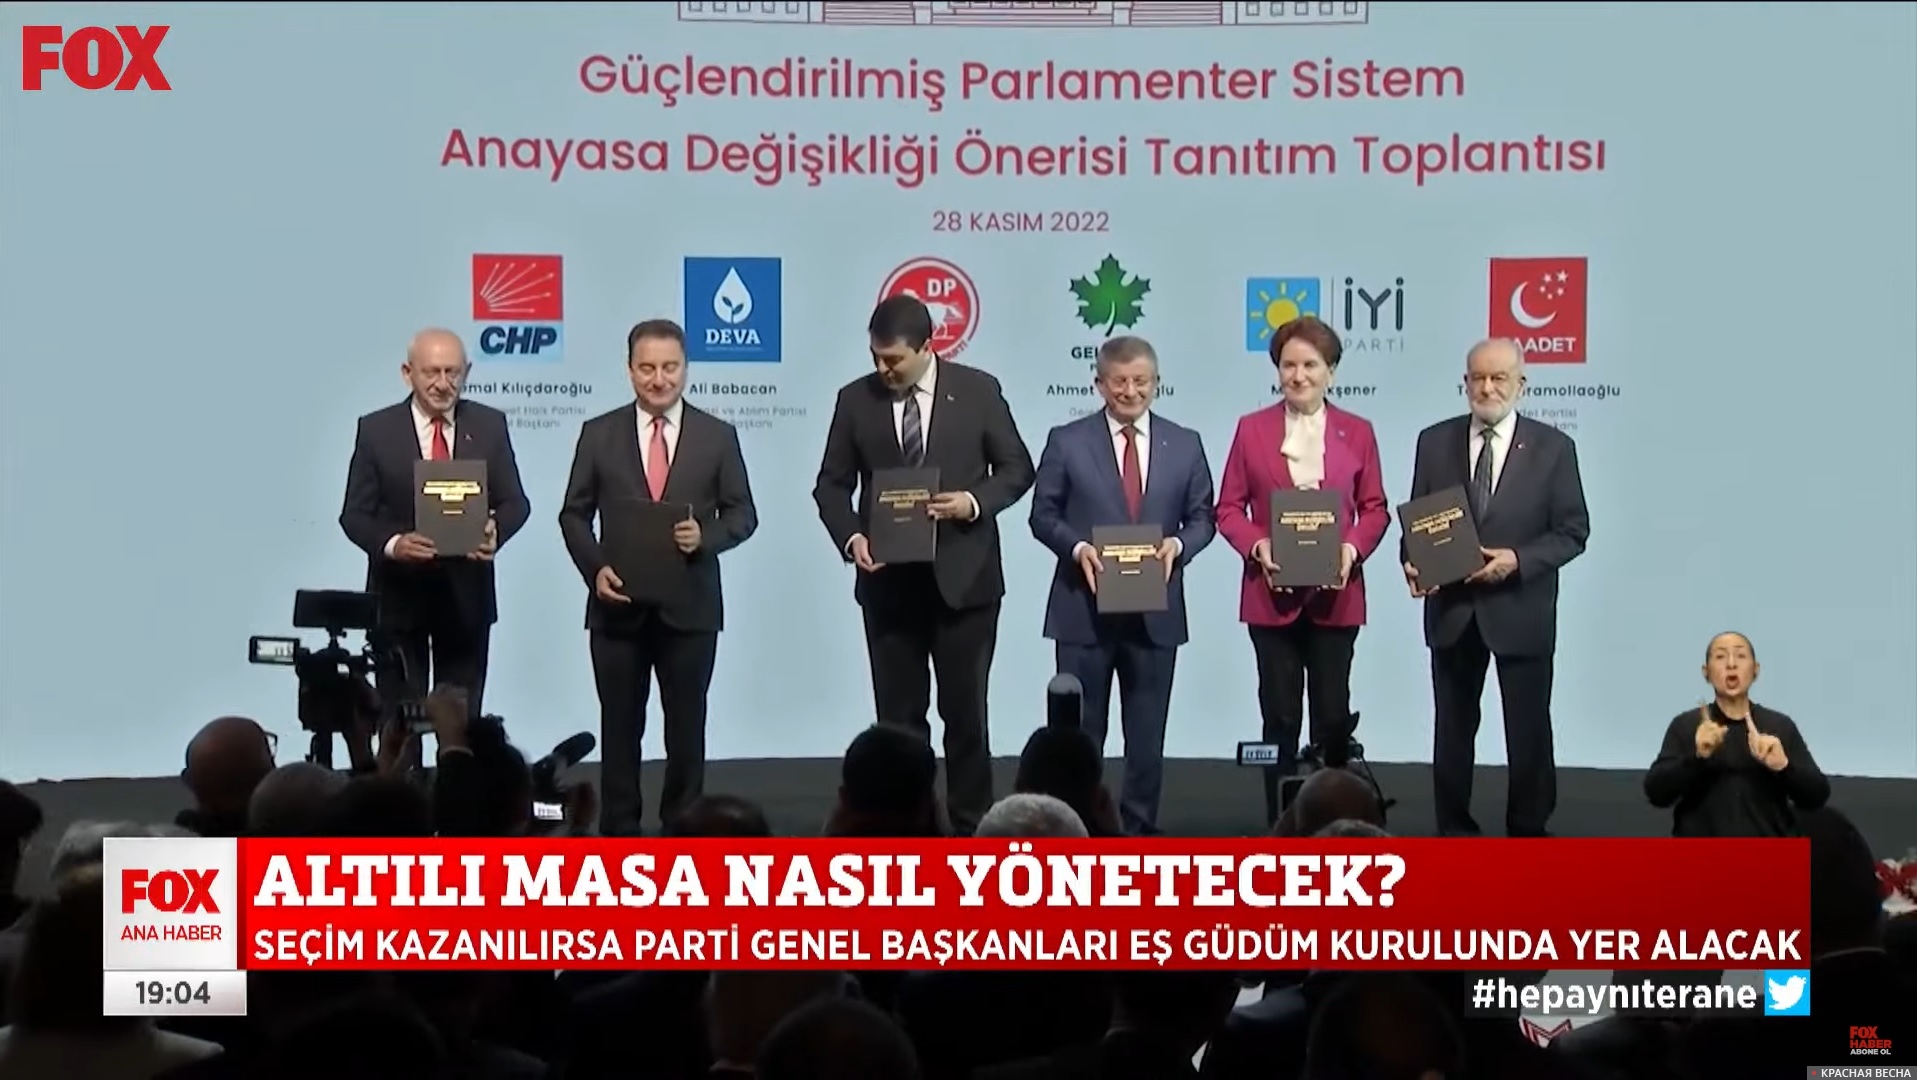 Шестисторонний альянс турецкой оппозиции